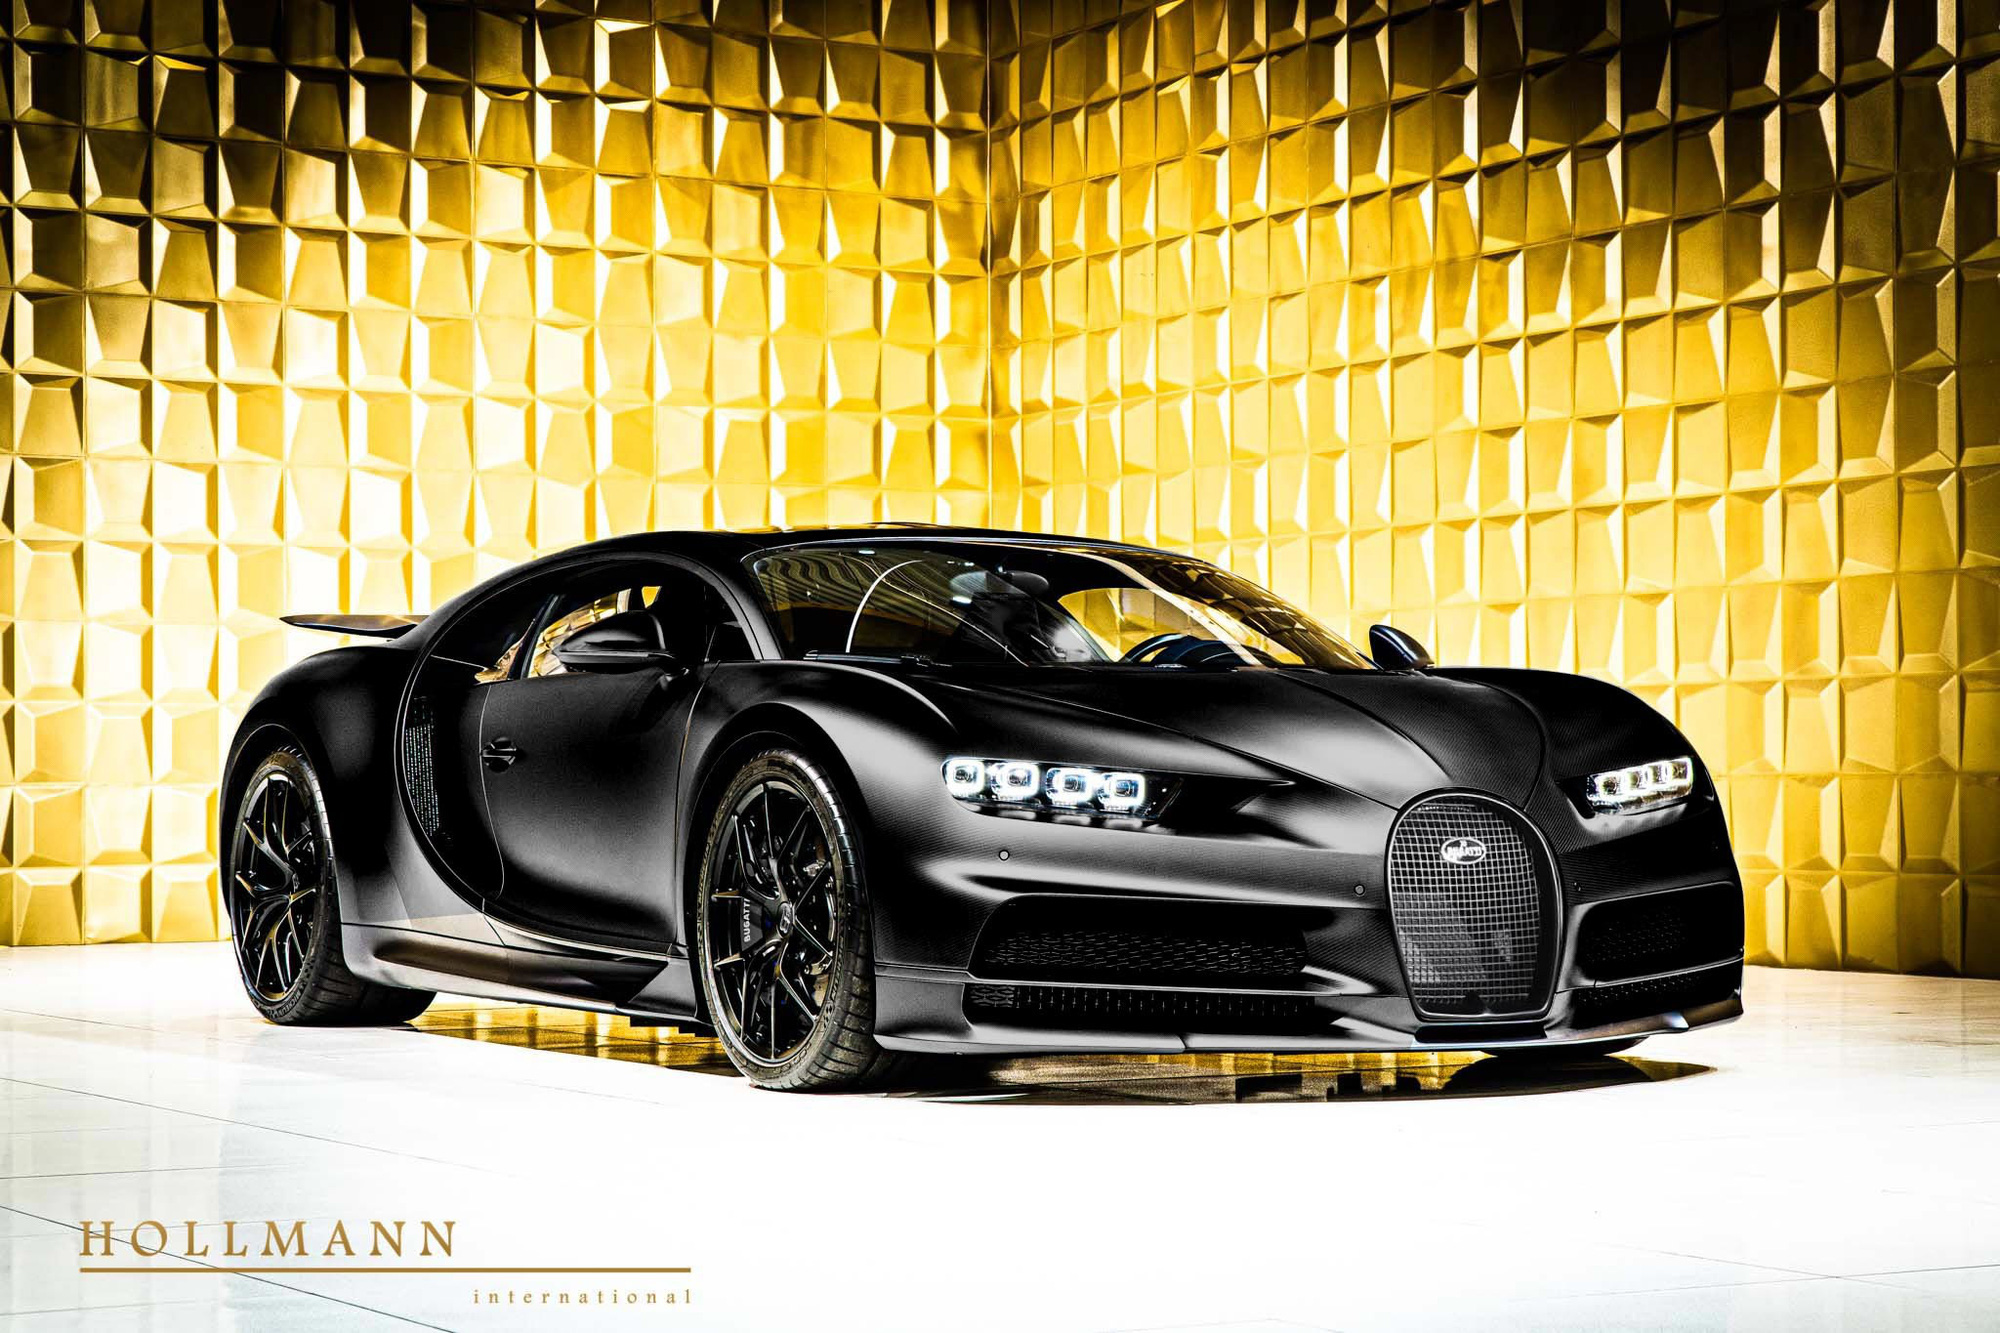 Bugatti Chiron Sport Noire Sportive siêu hiếm bất ngờ xuất hiện trên thị trường xe cũ với giá hơn 4 triệu USD